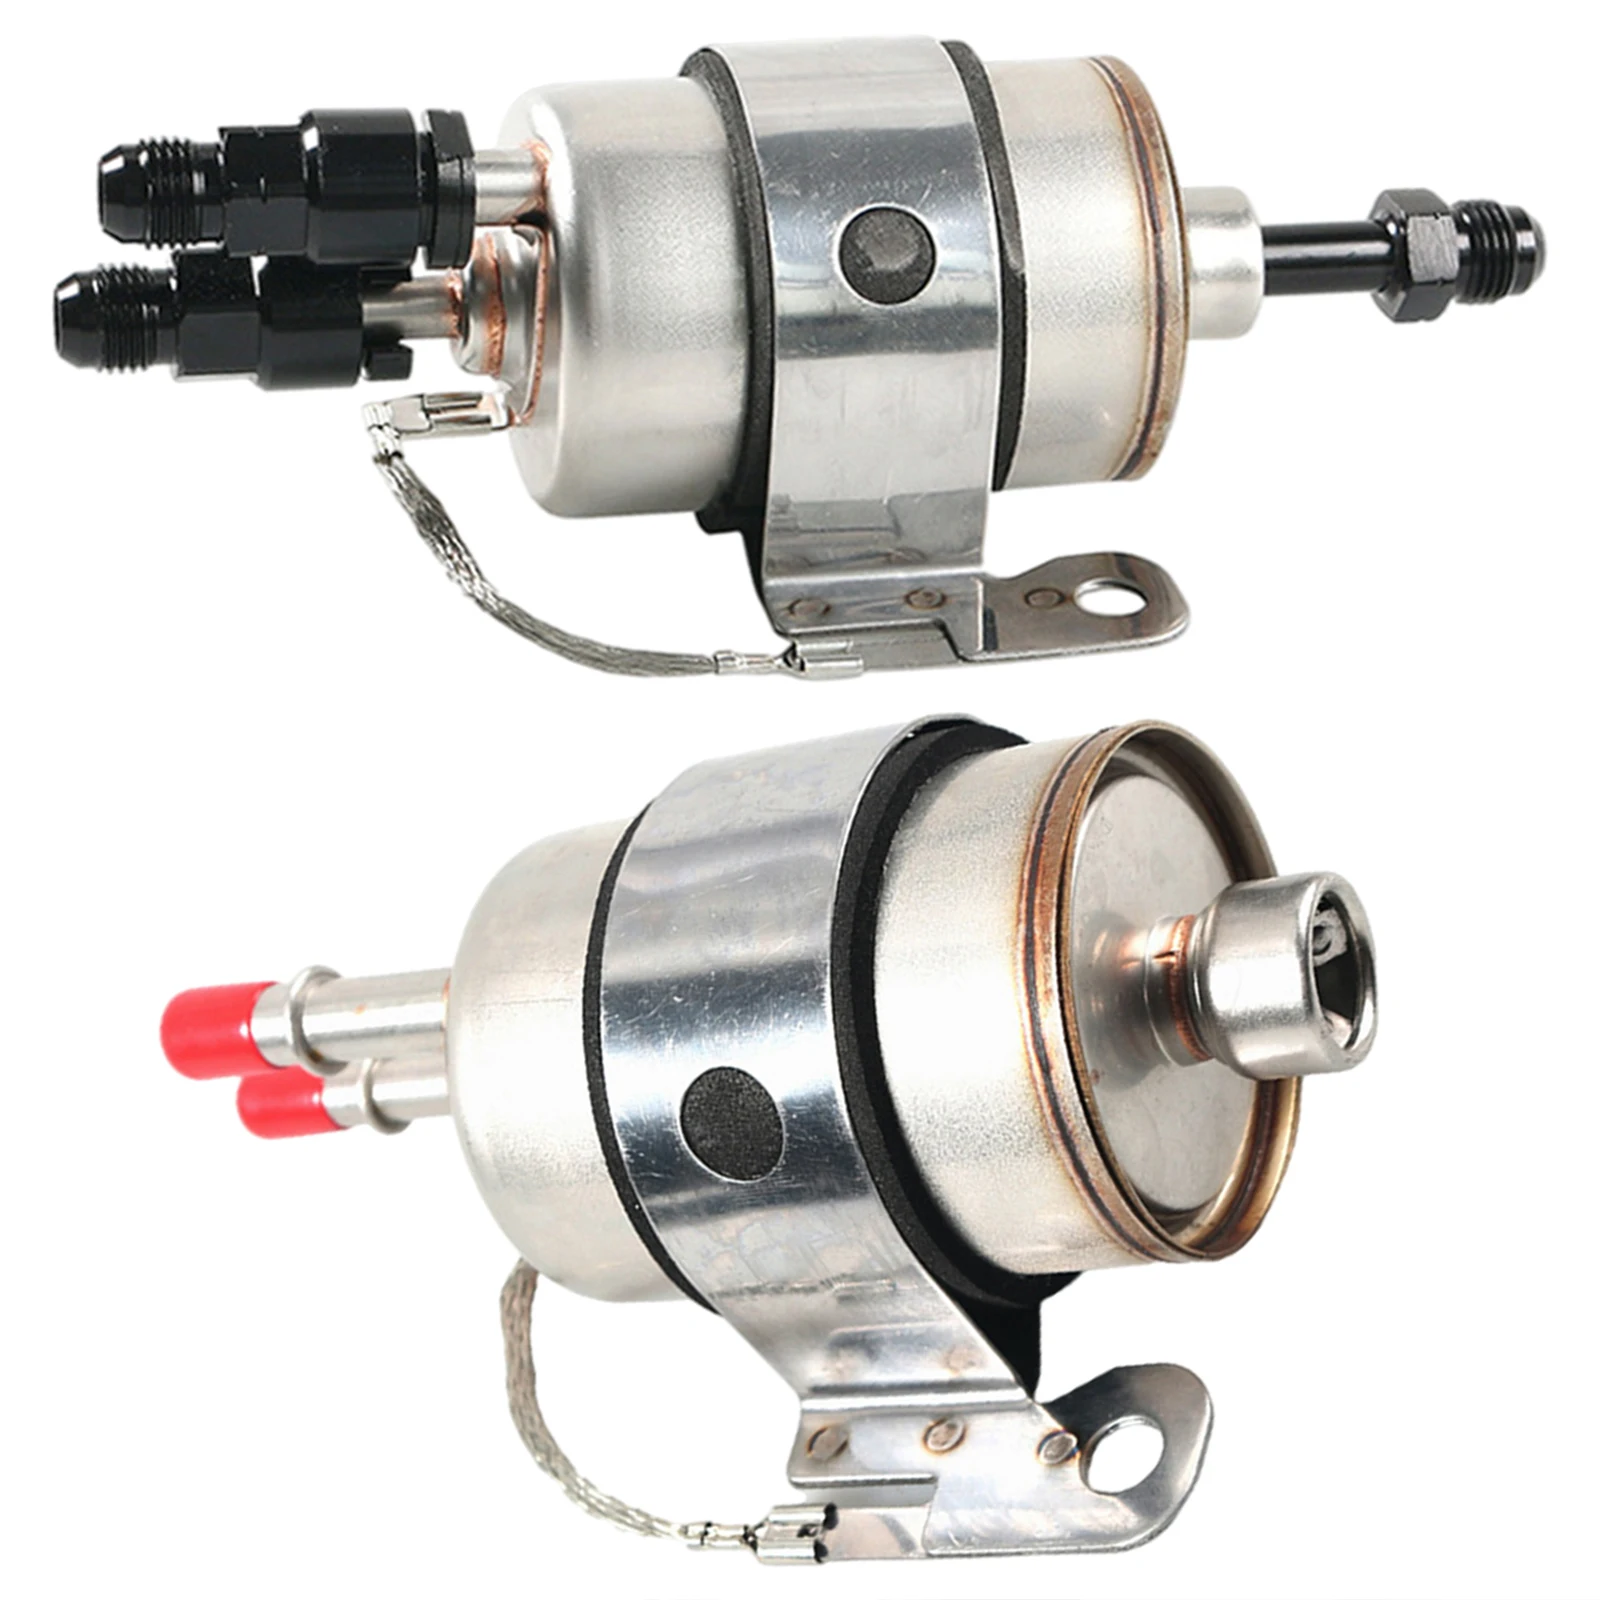 Fuel Filter Regulator Filter Assembly Pressure Regulator Lq4 Lq9 LM7 Fit for LS Conversion Car Engine LS2 LS6 